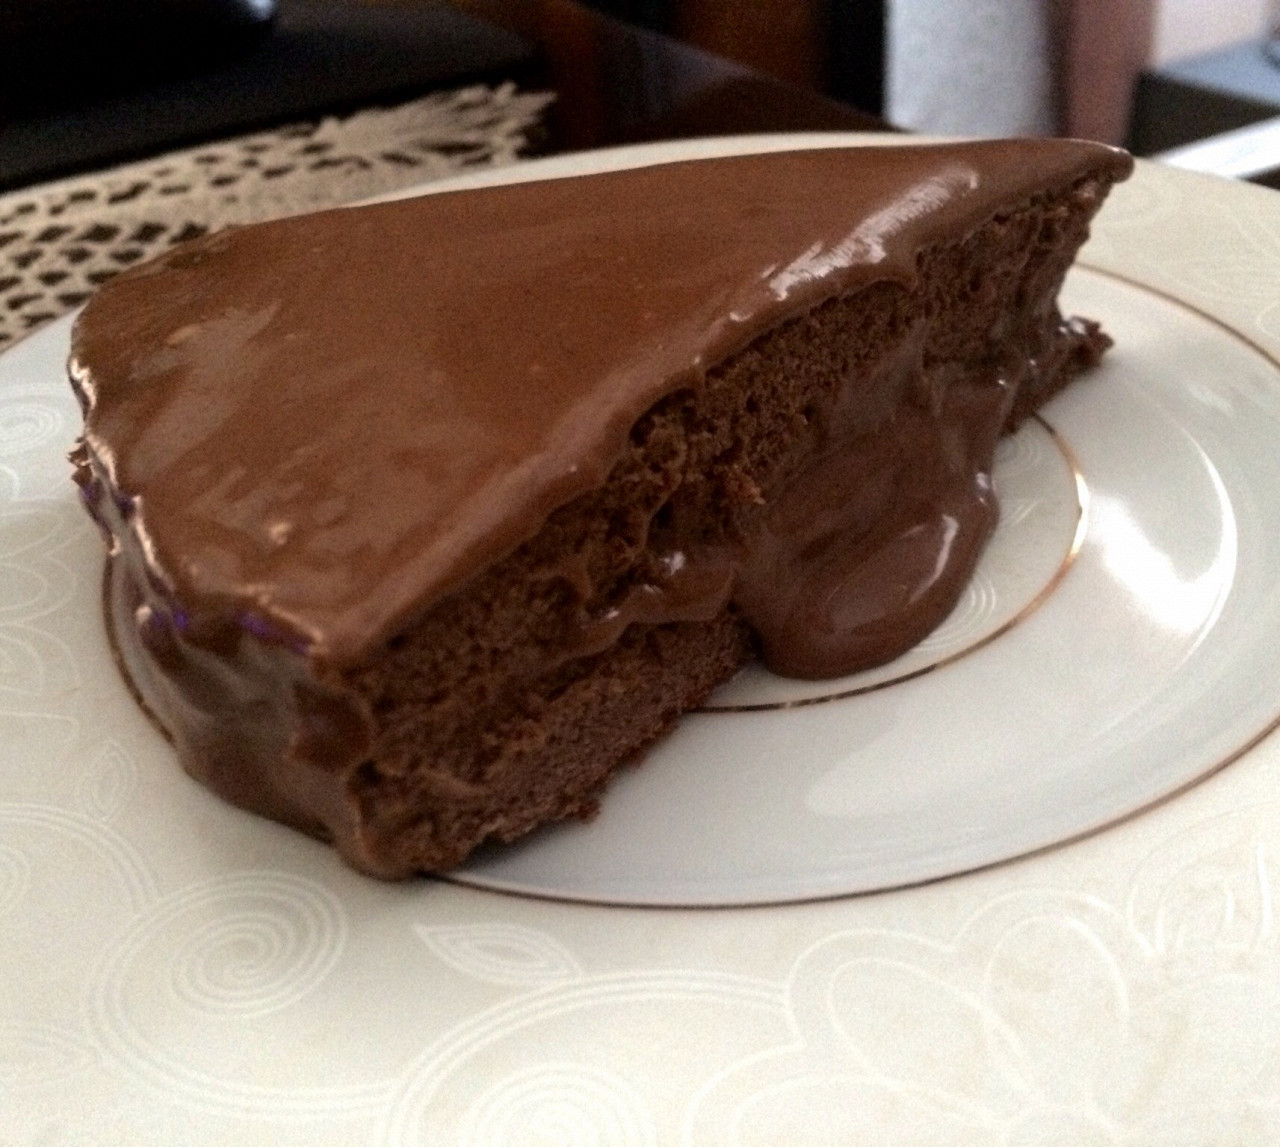 Шоколадный торт (без муки)